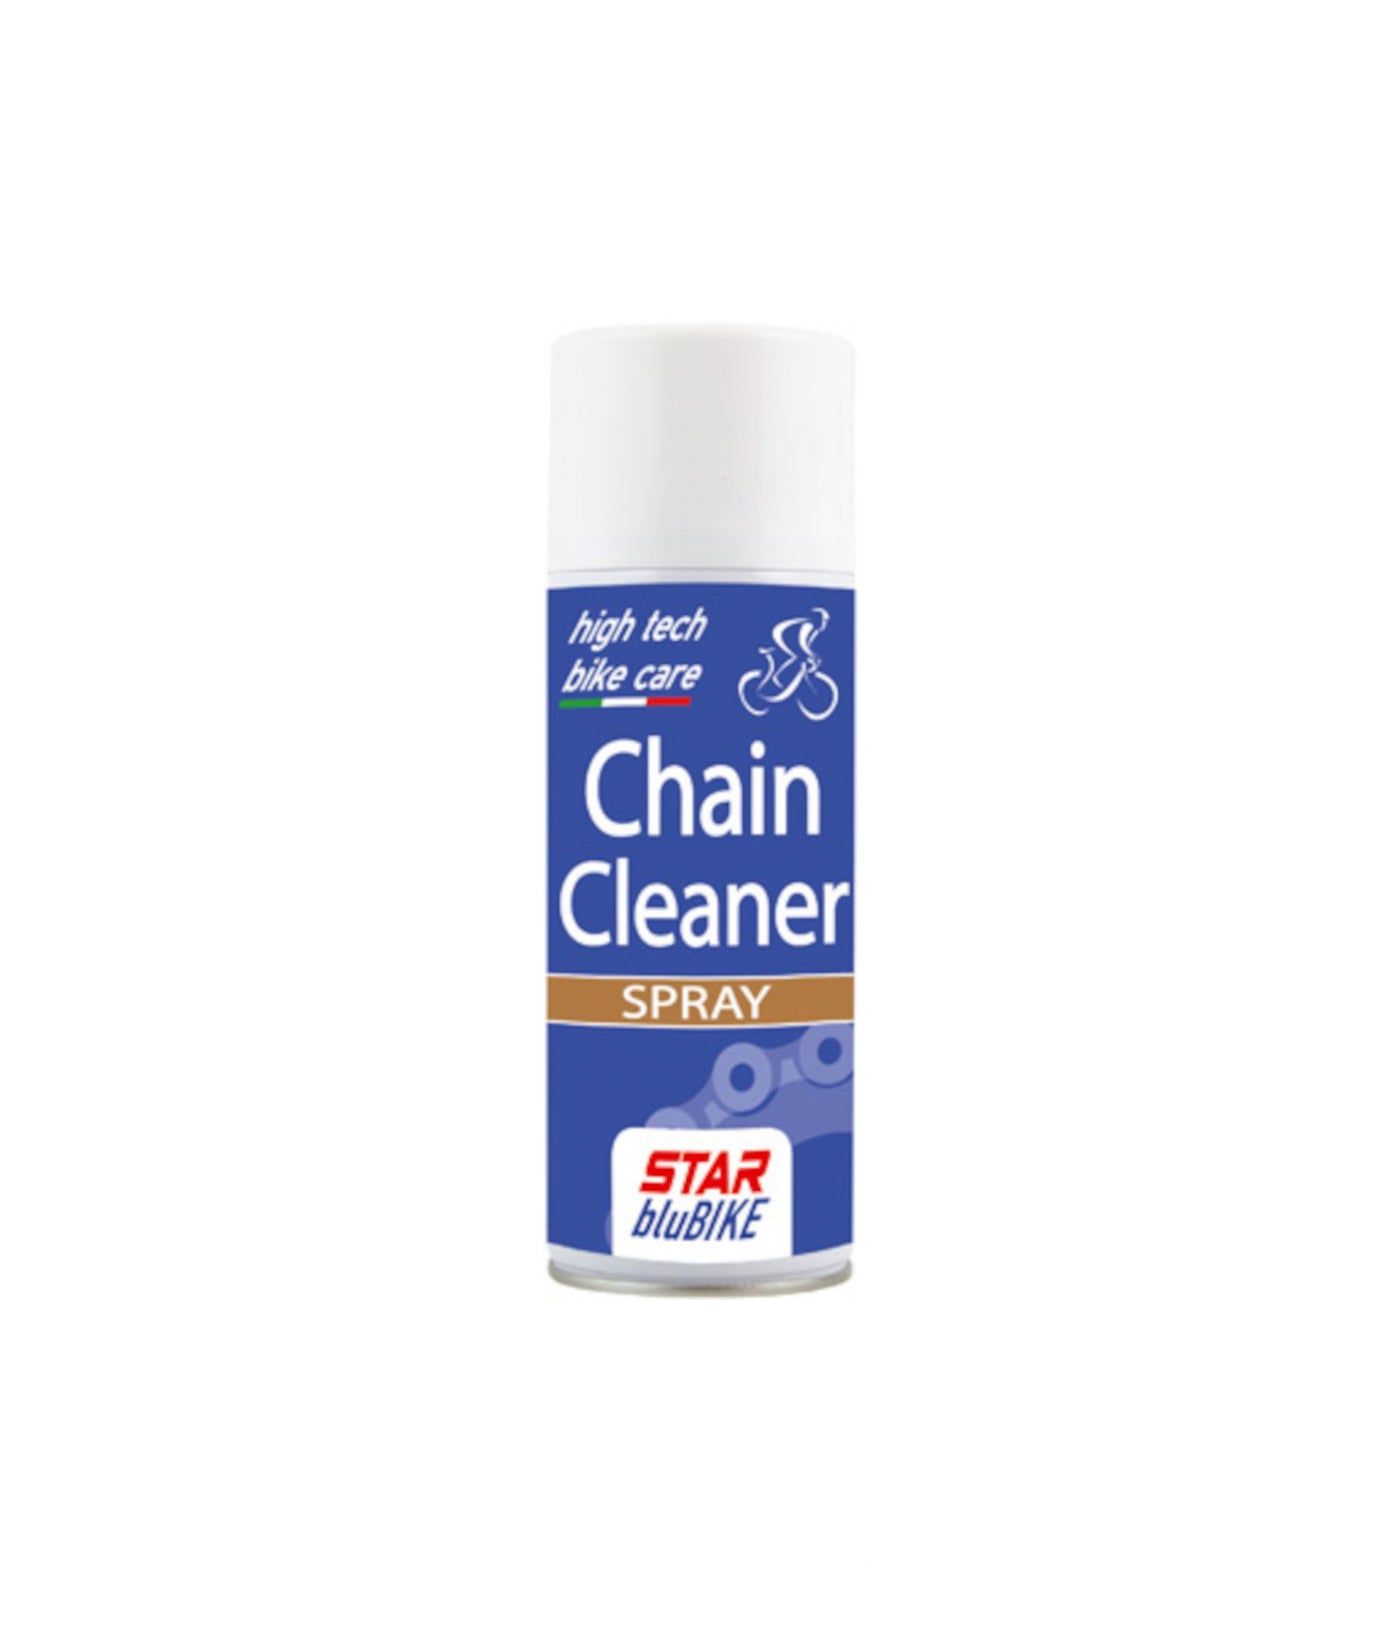 Star Chain Cleaner Spray